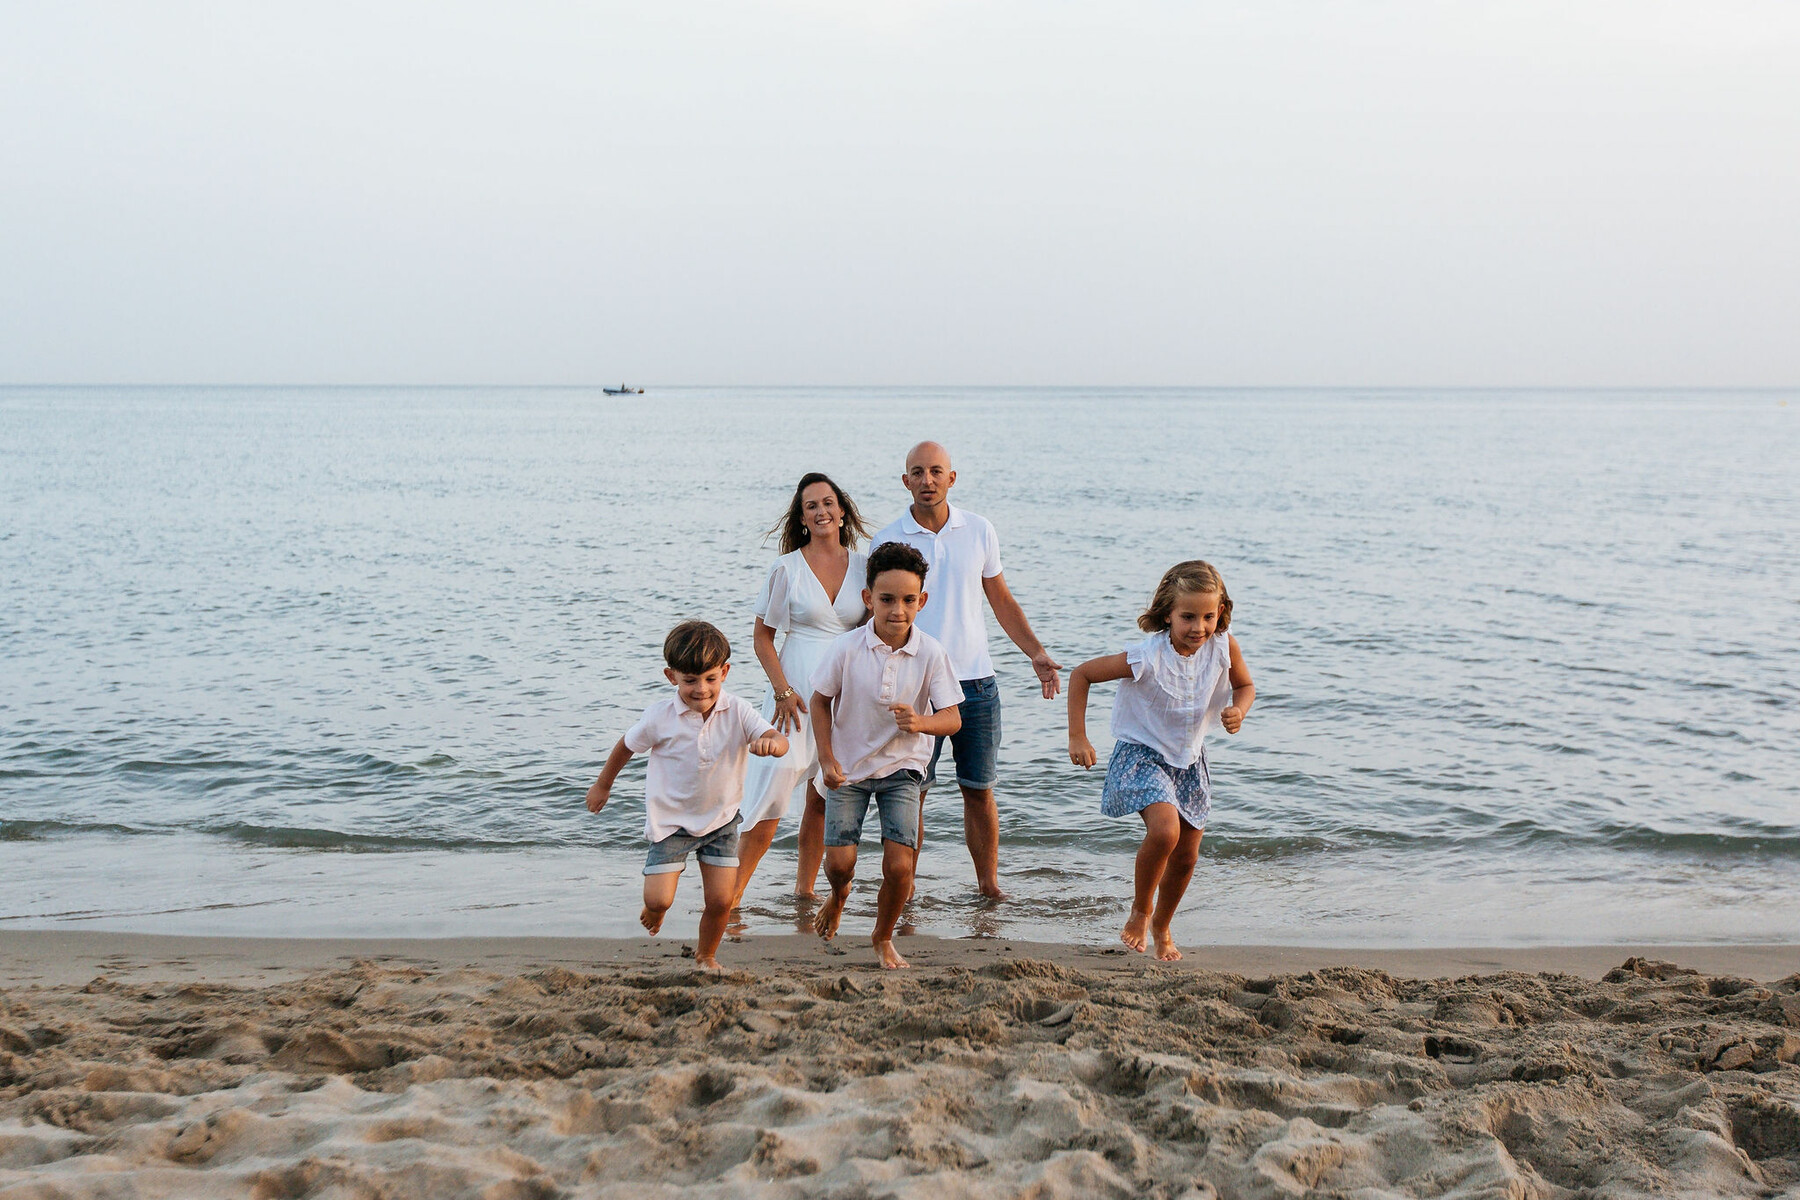 Family photo shoot on the beach in Marbella, Malaga